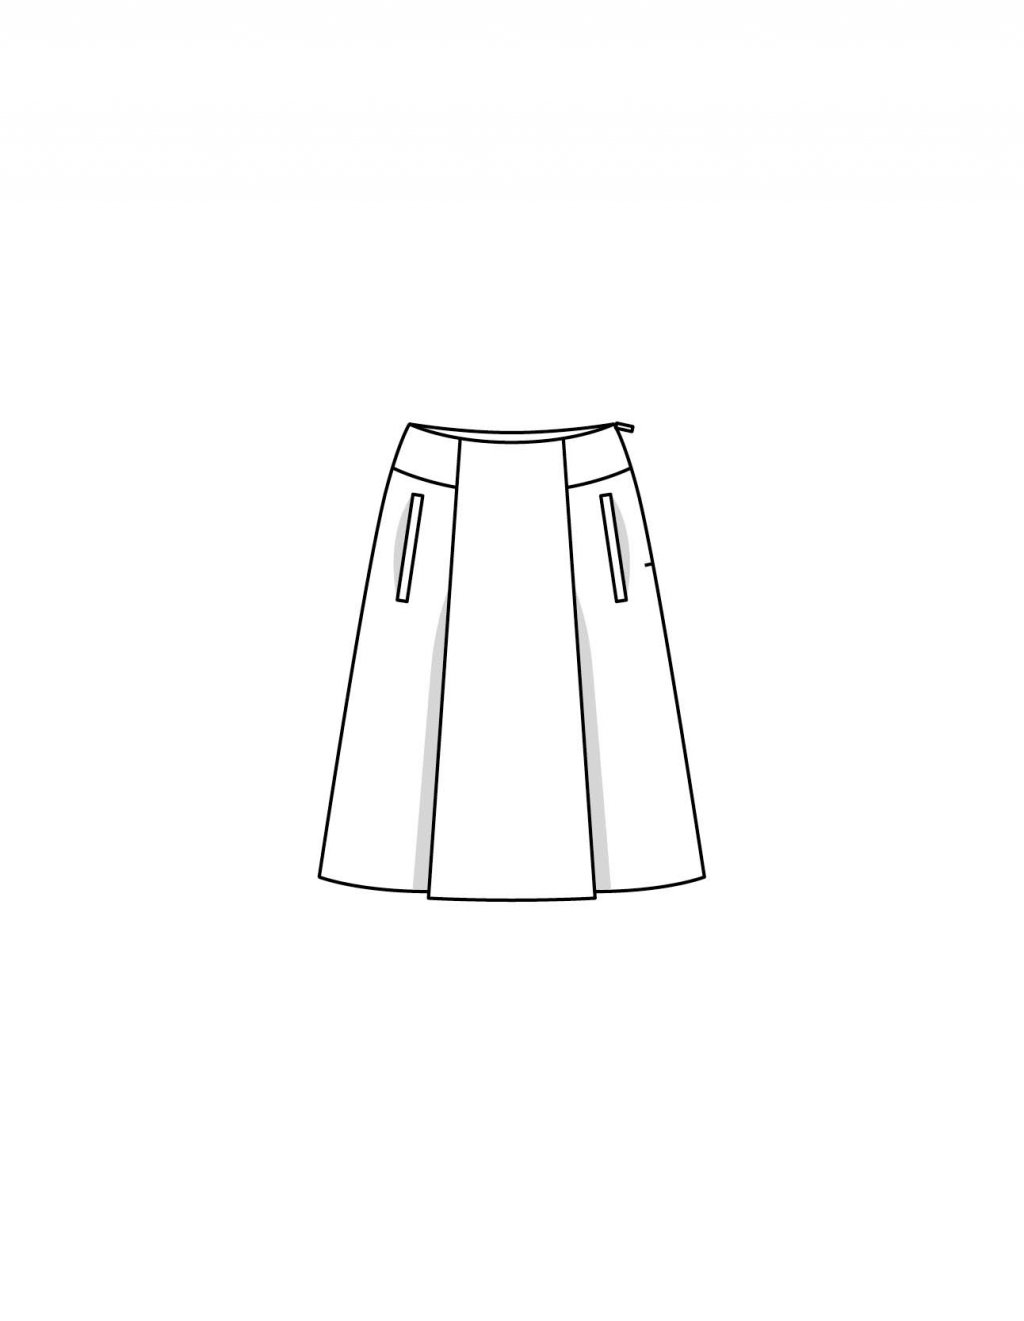 Kalhotové sukně 109 A, B